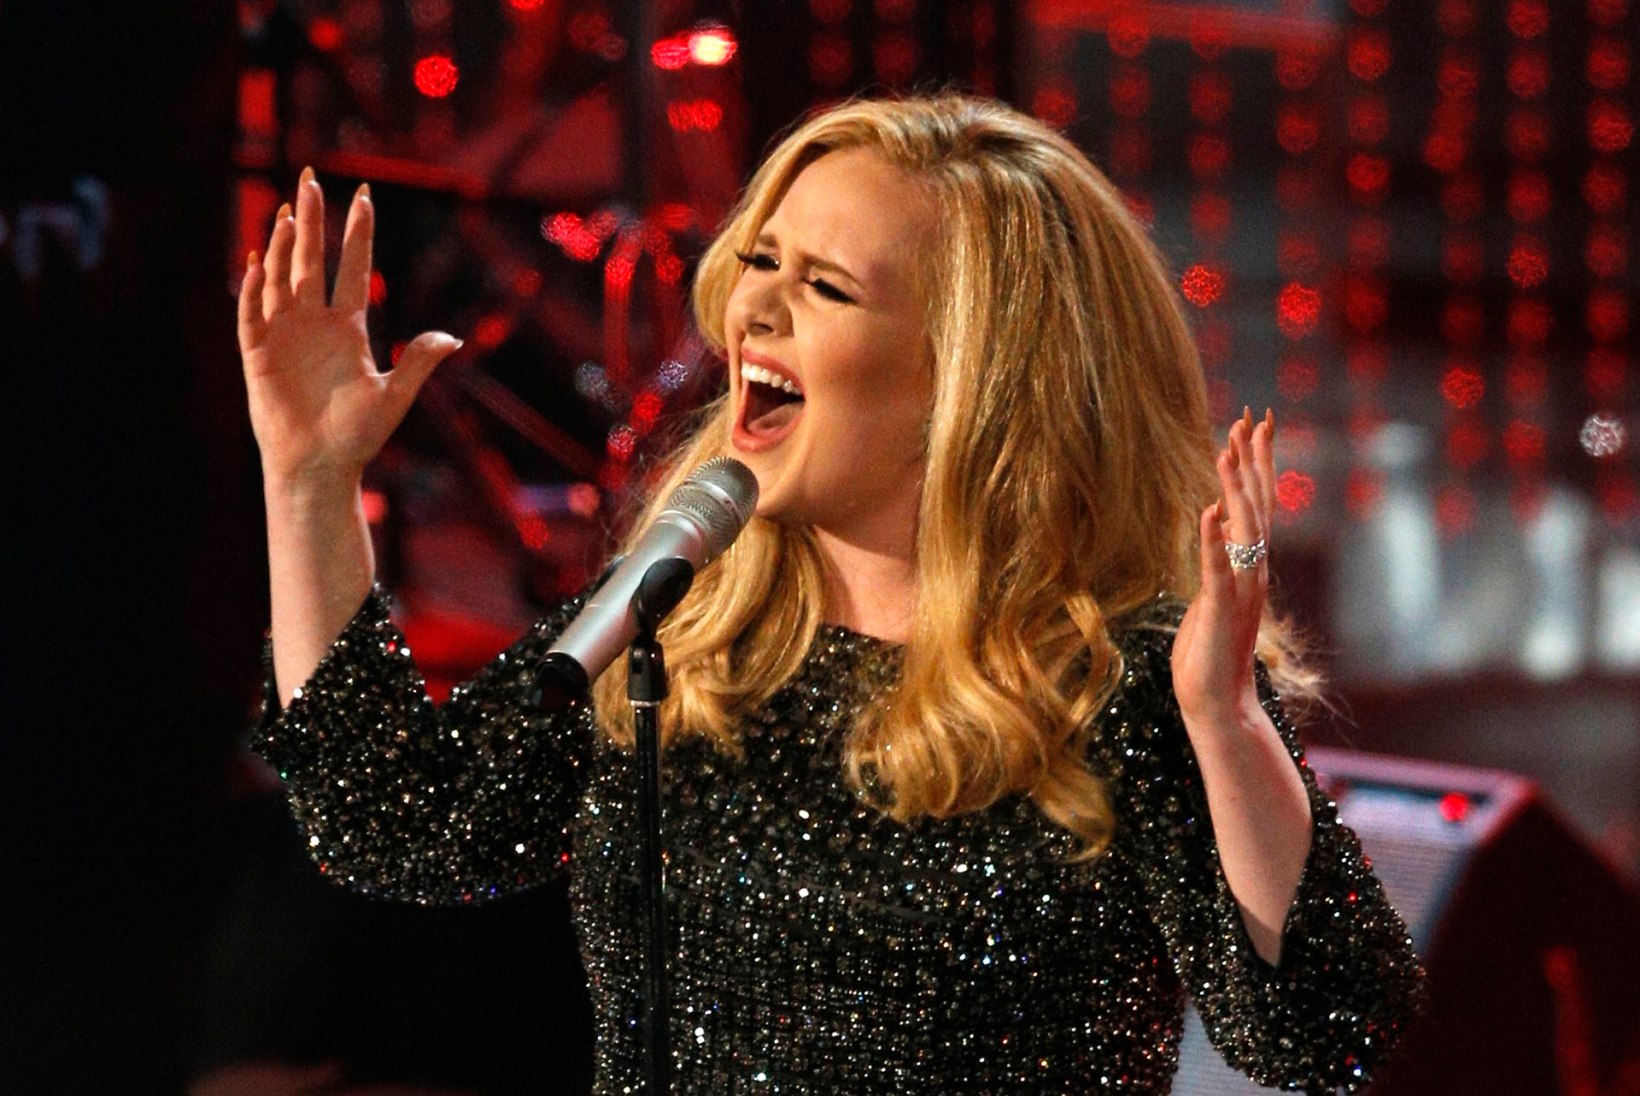 Adele’i "Hello" ajas inimesed arust ära